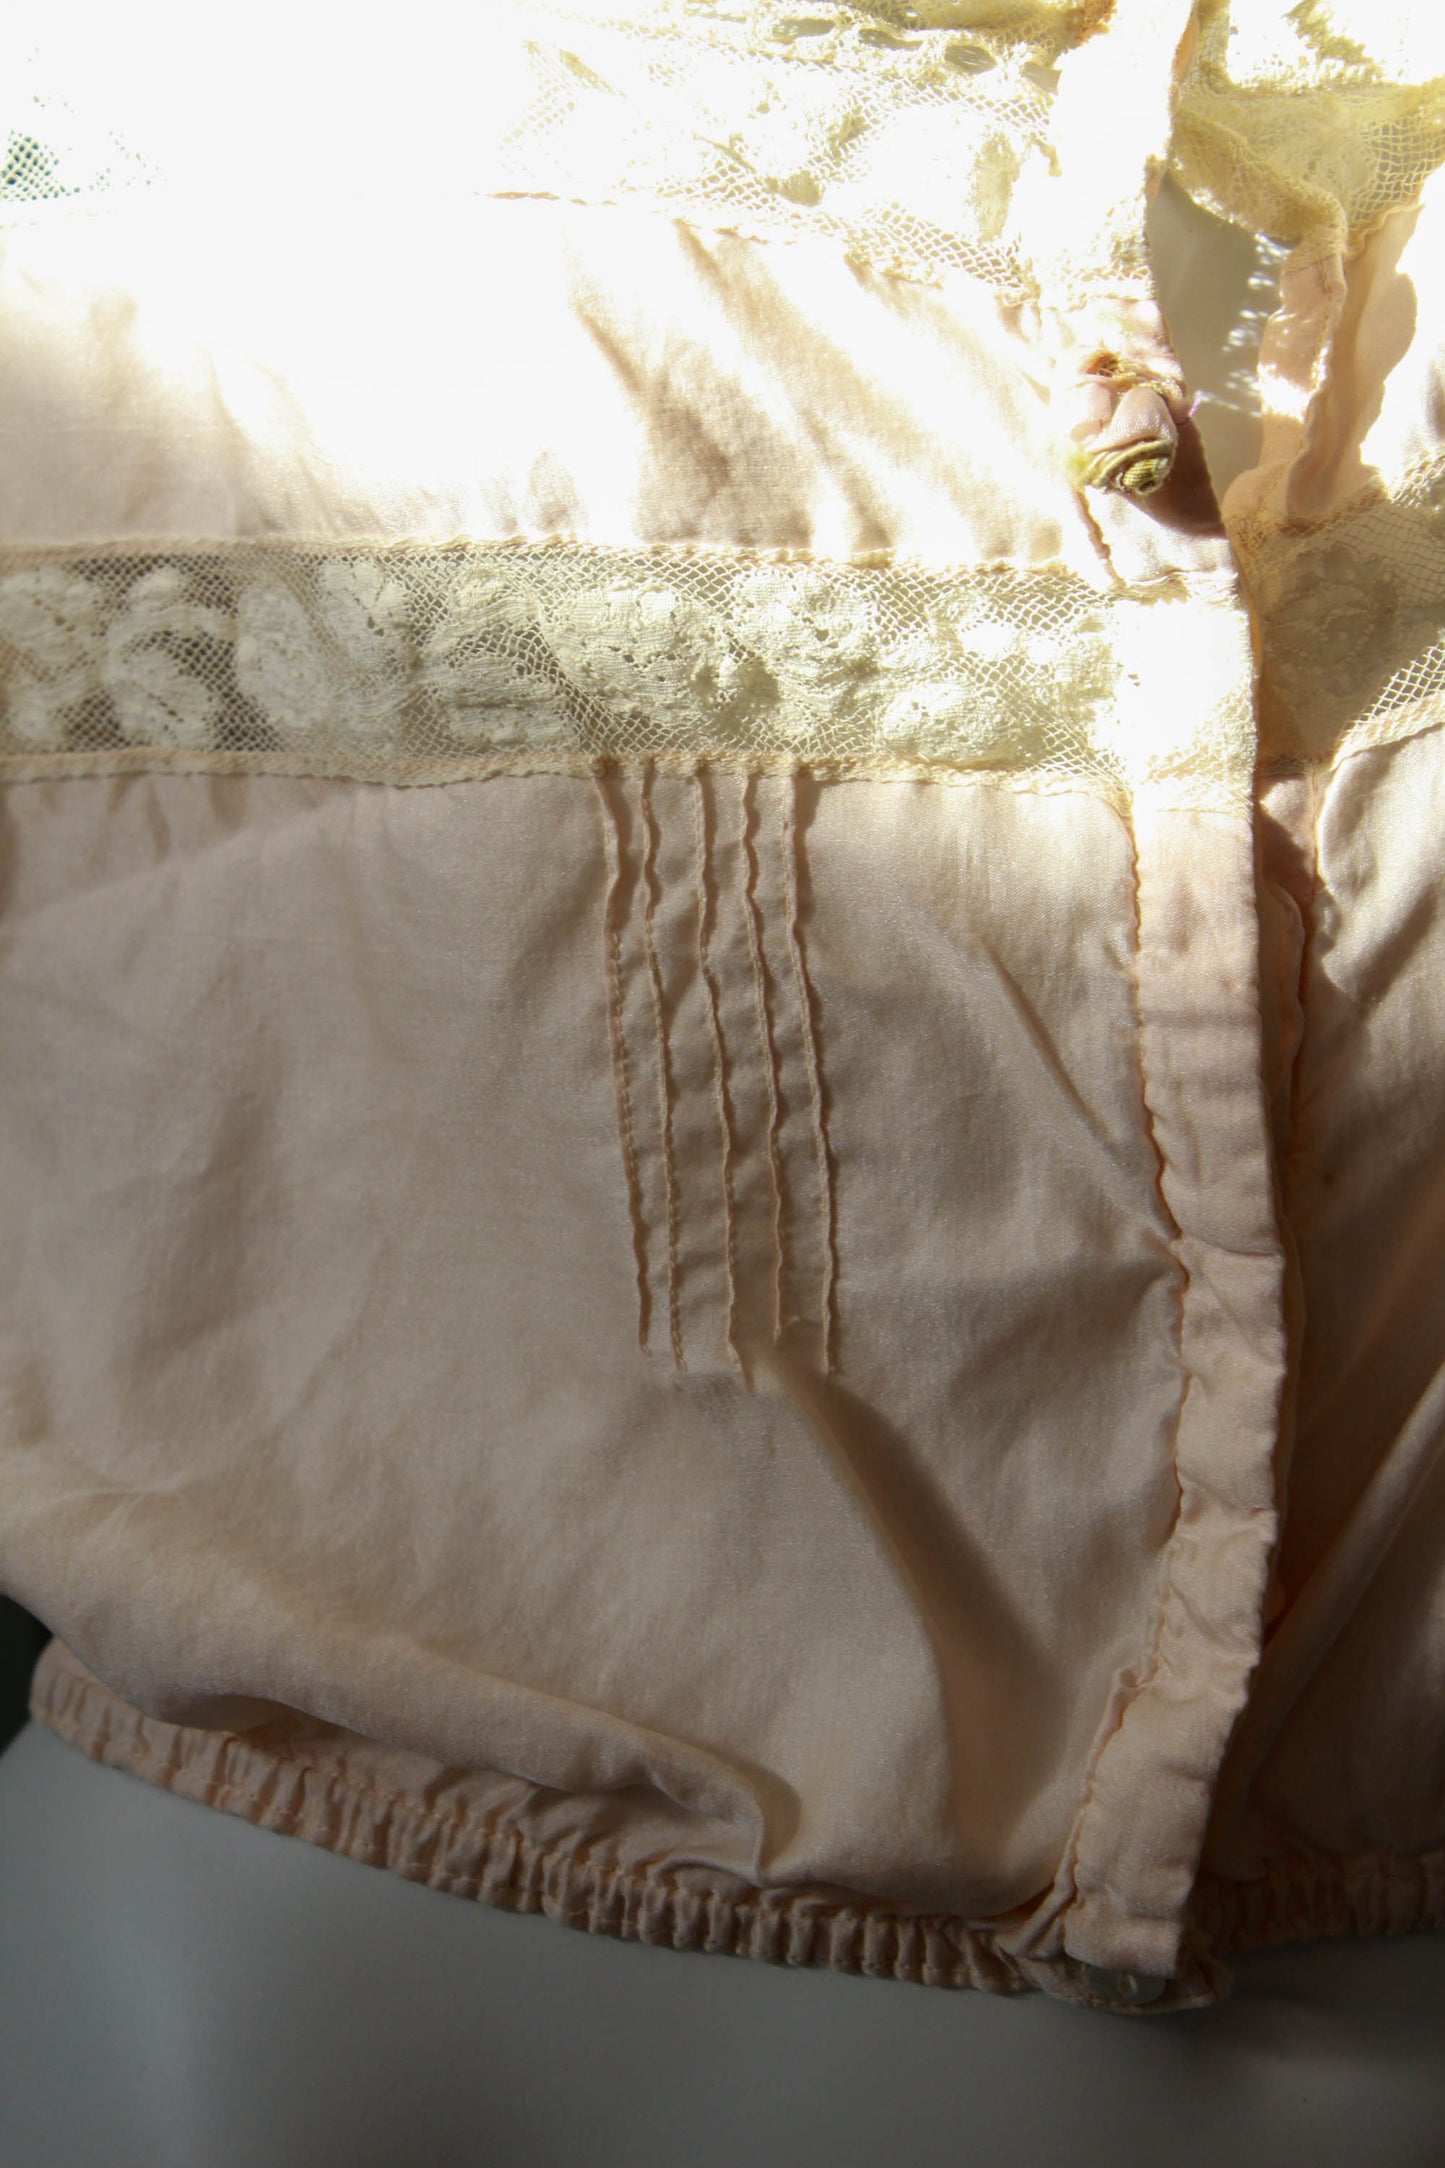 antique victorian edwardian pale pink silk corset cover with lace insets, lace straps, flower applique, pintucks antique lingerie